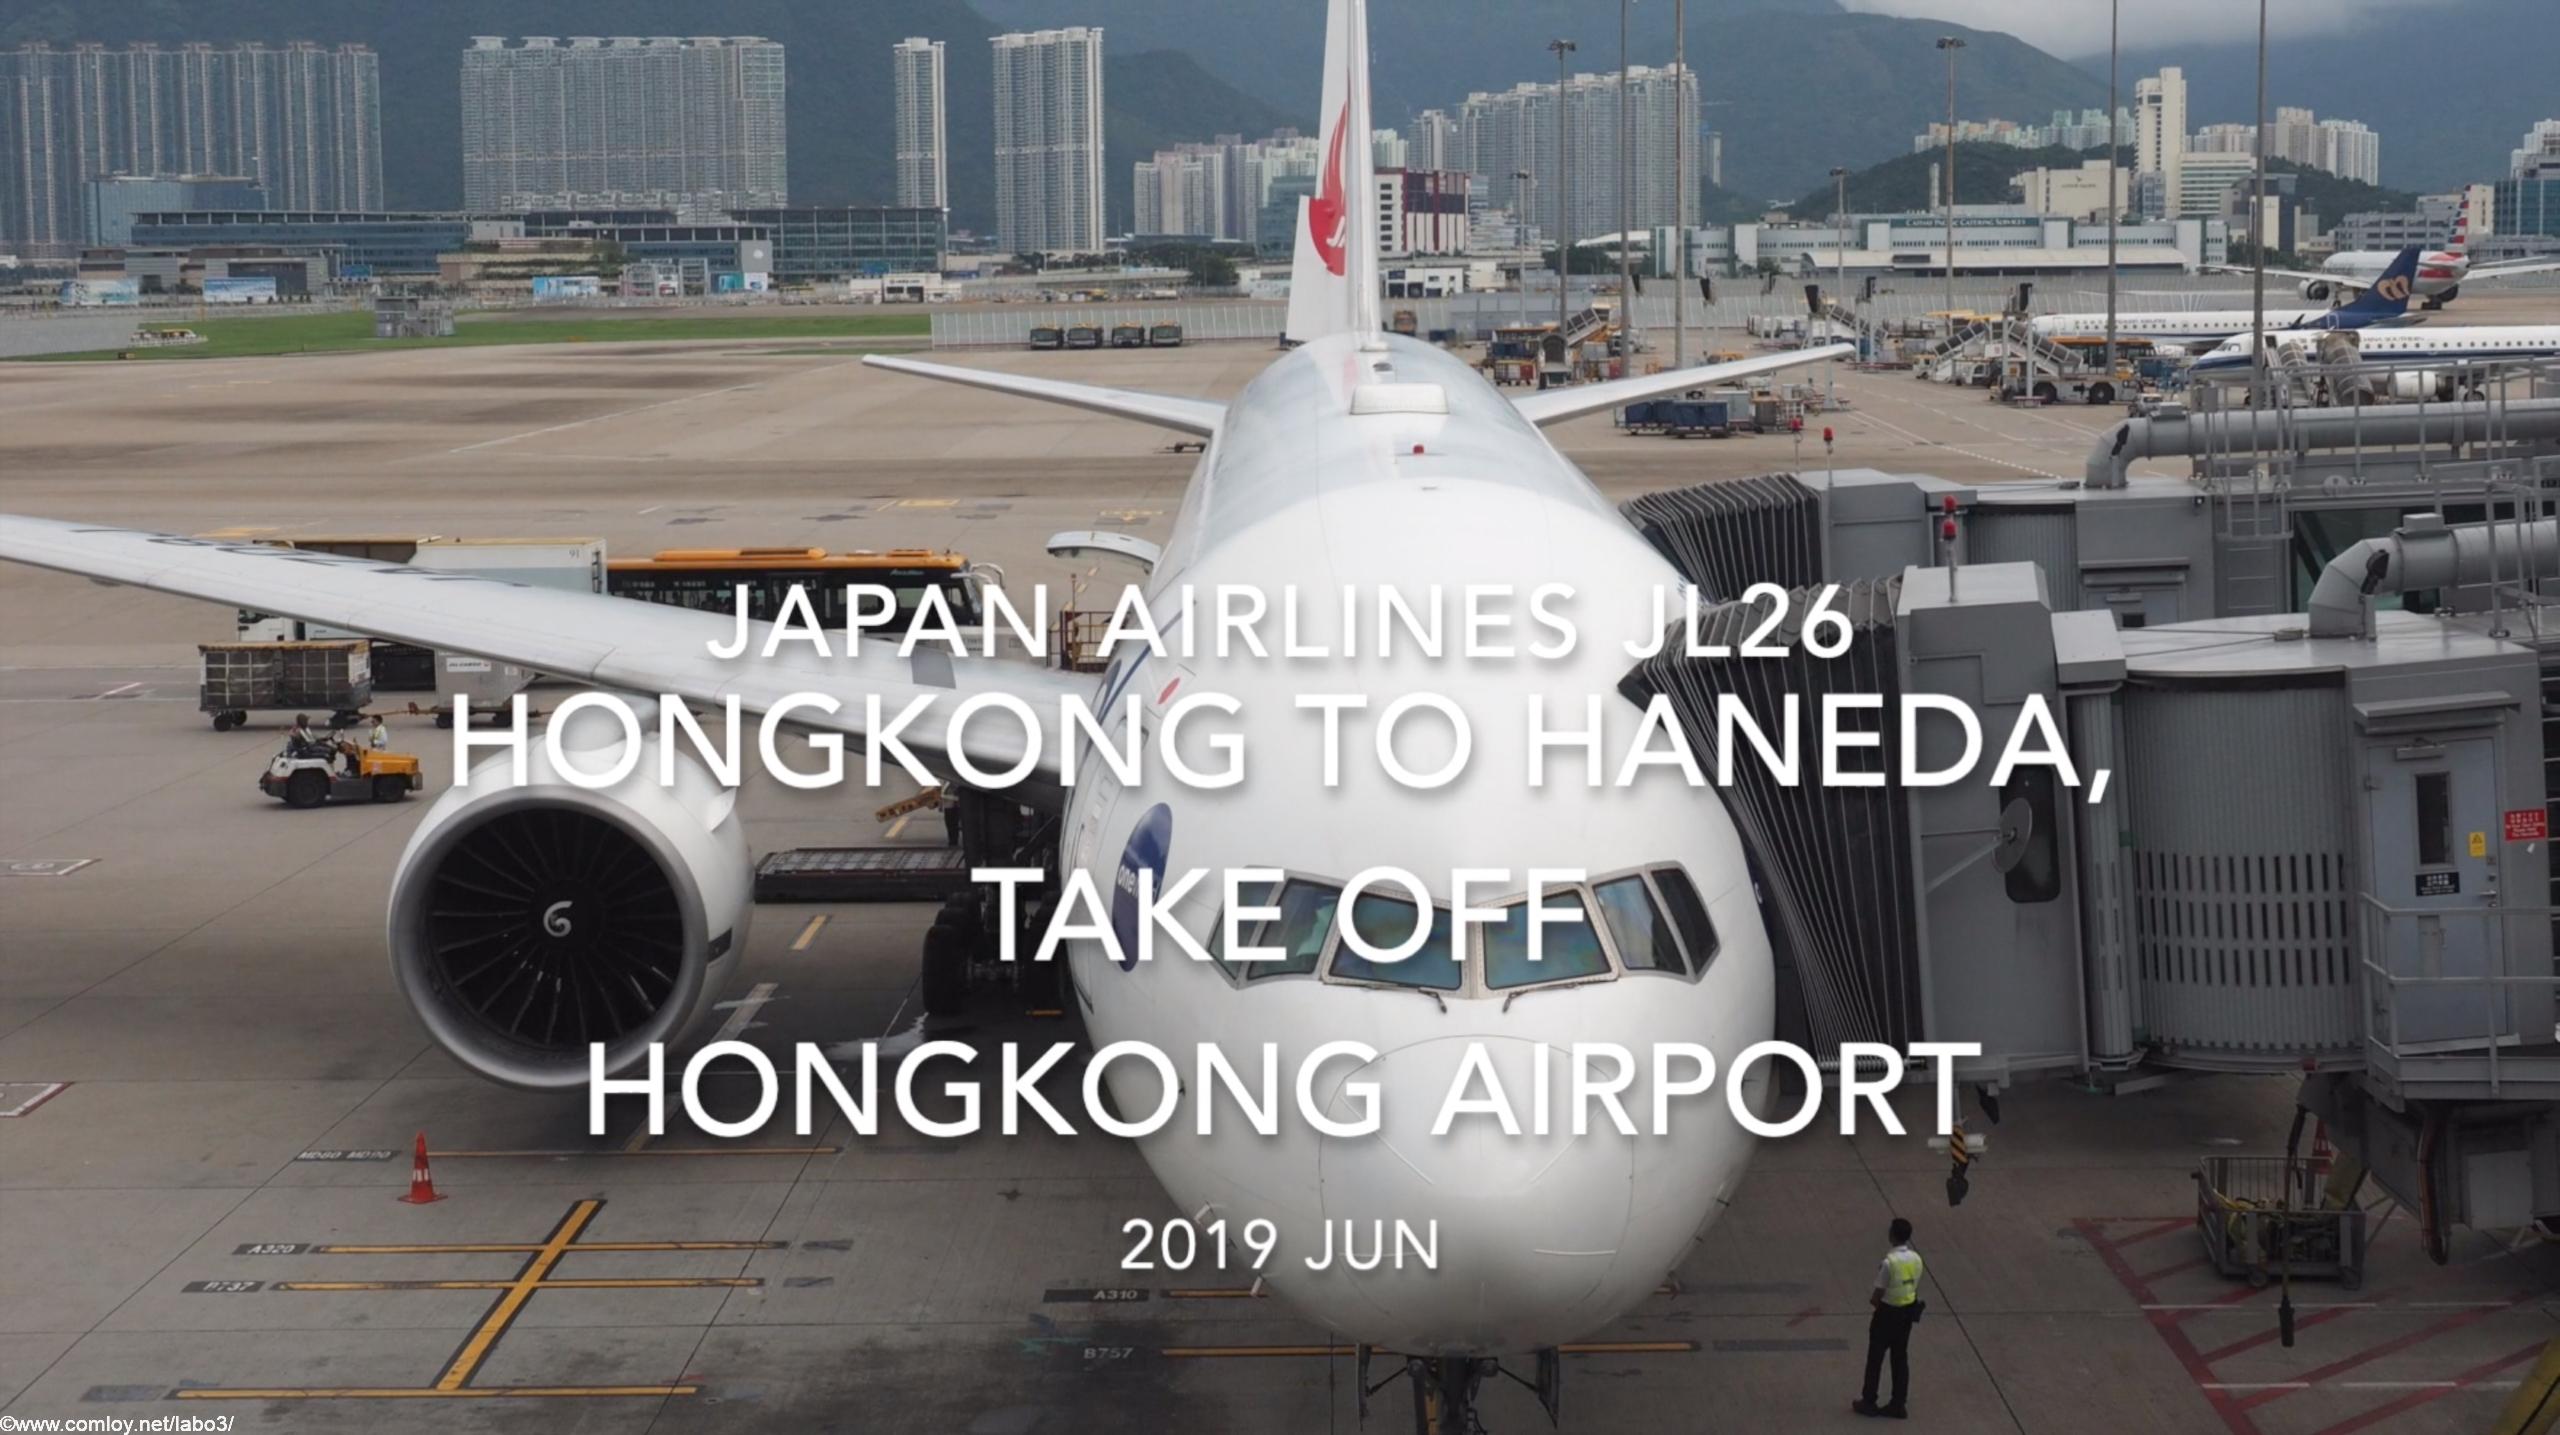 【機内から離着陸映像】2019 JUN Japan airlines JL26 HONGKONG to HANEDA, Take off HONGKONG Airport